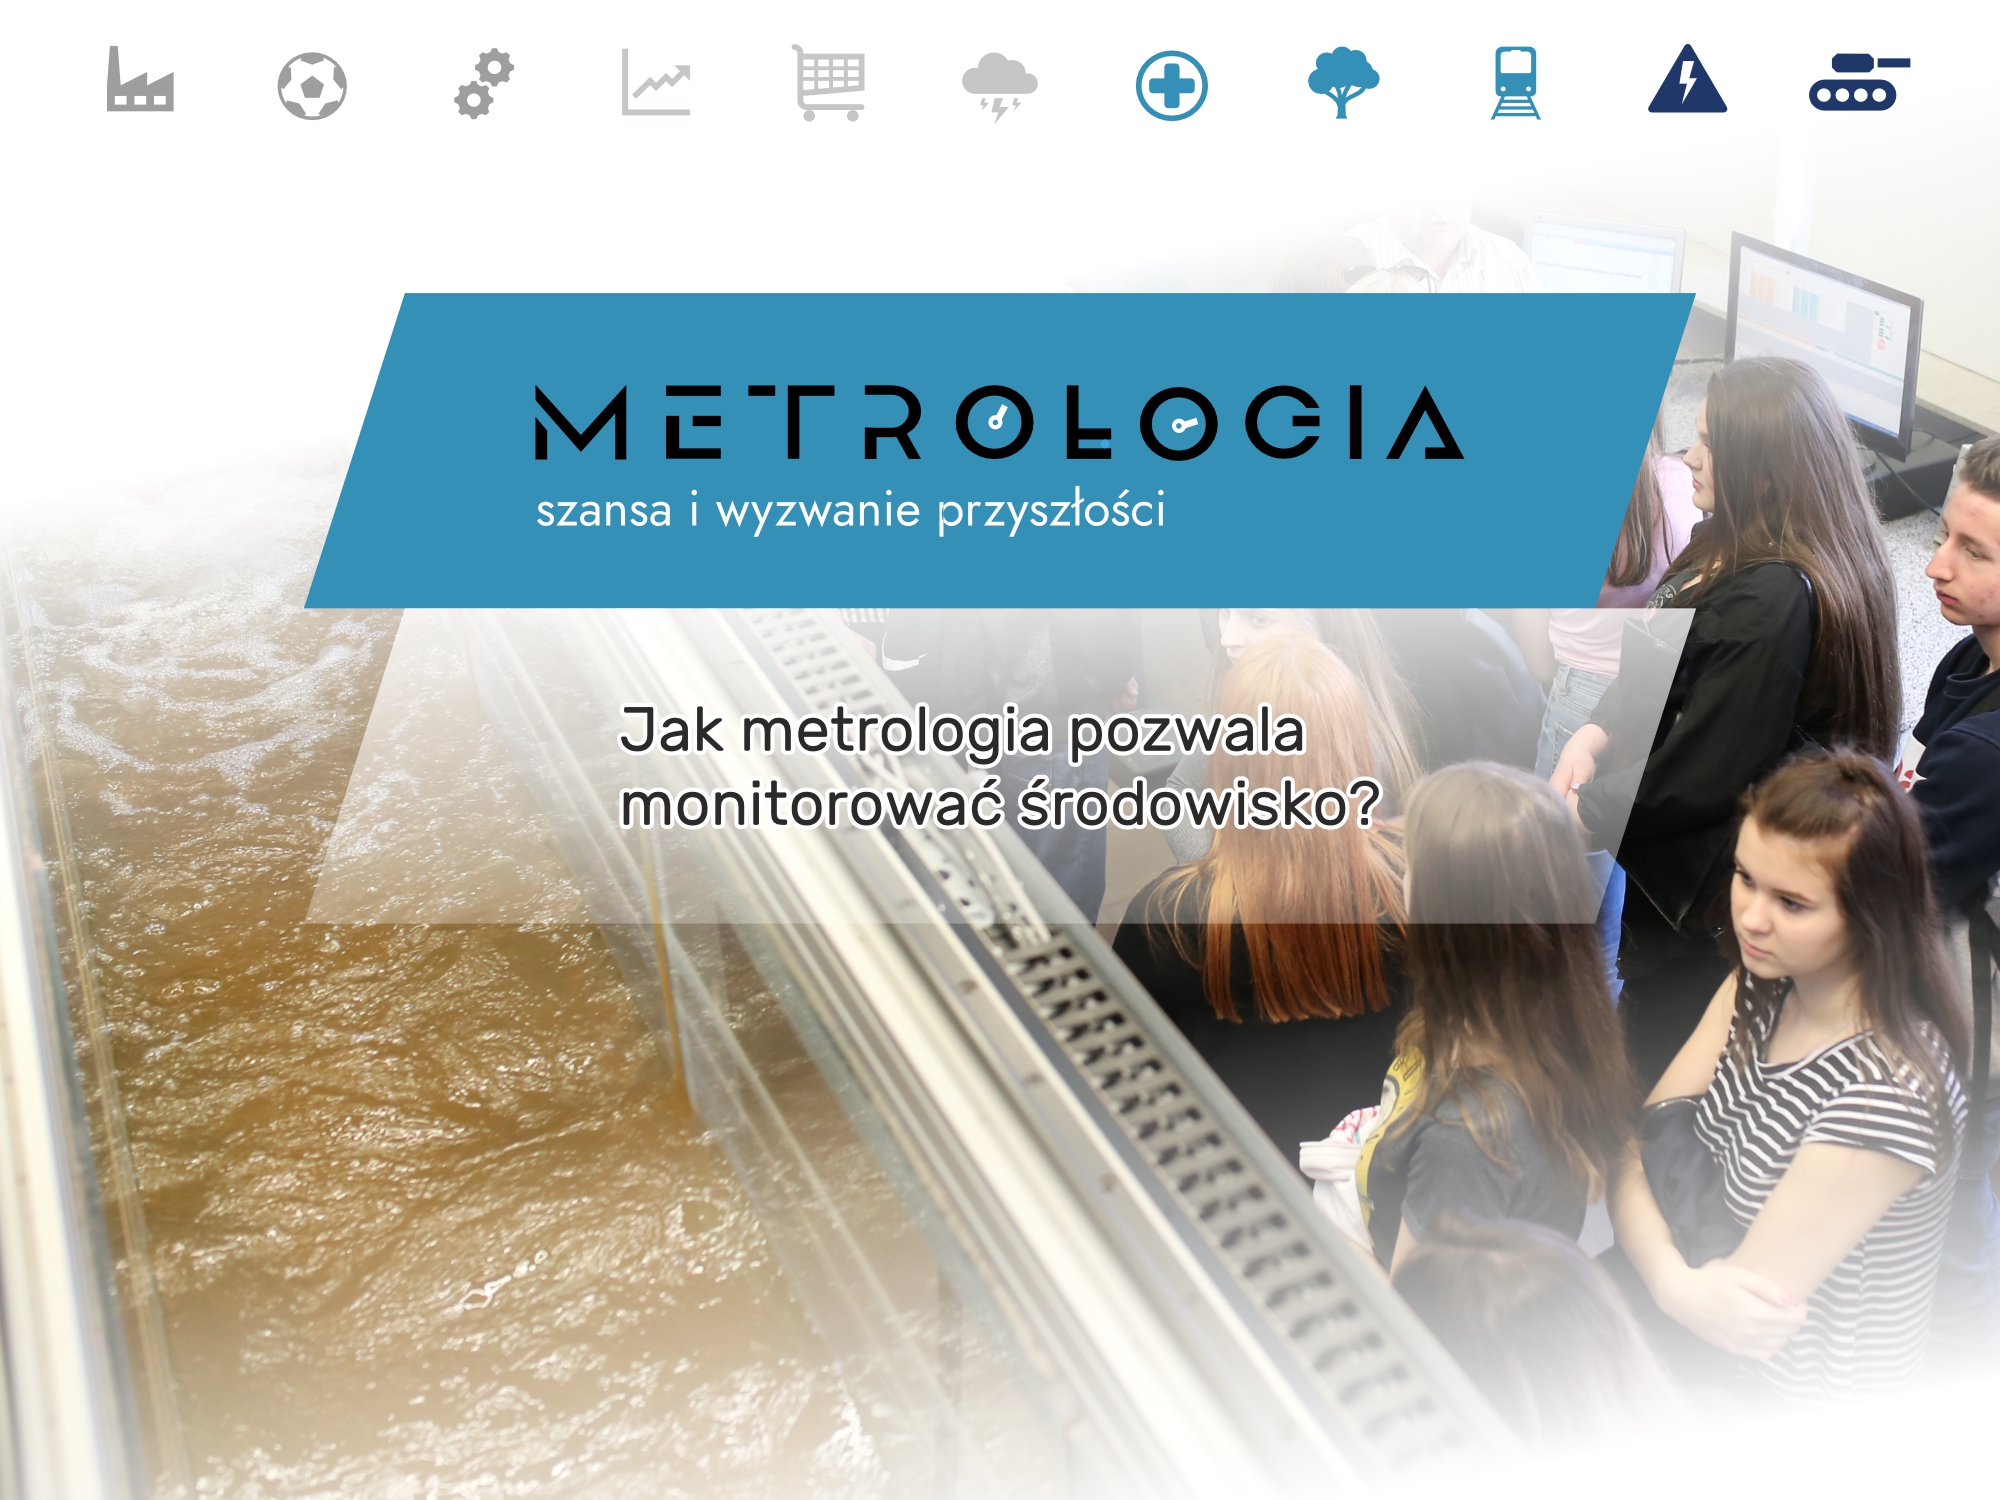 Jak metrologia pozwala monitorować środowisko?